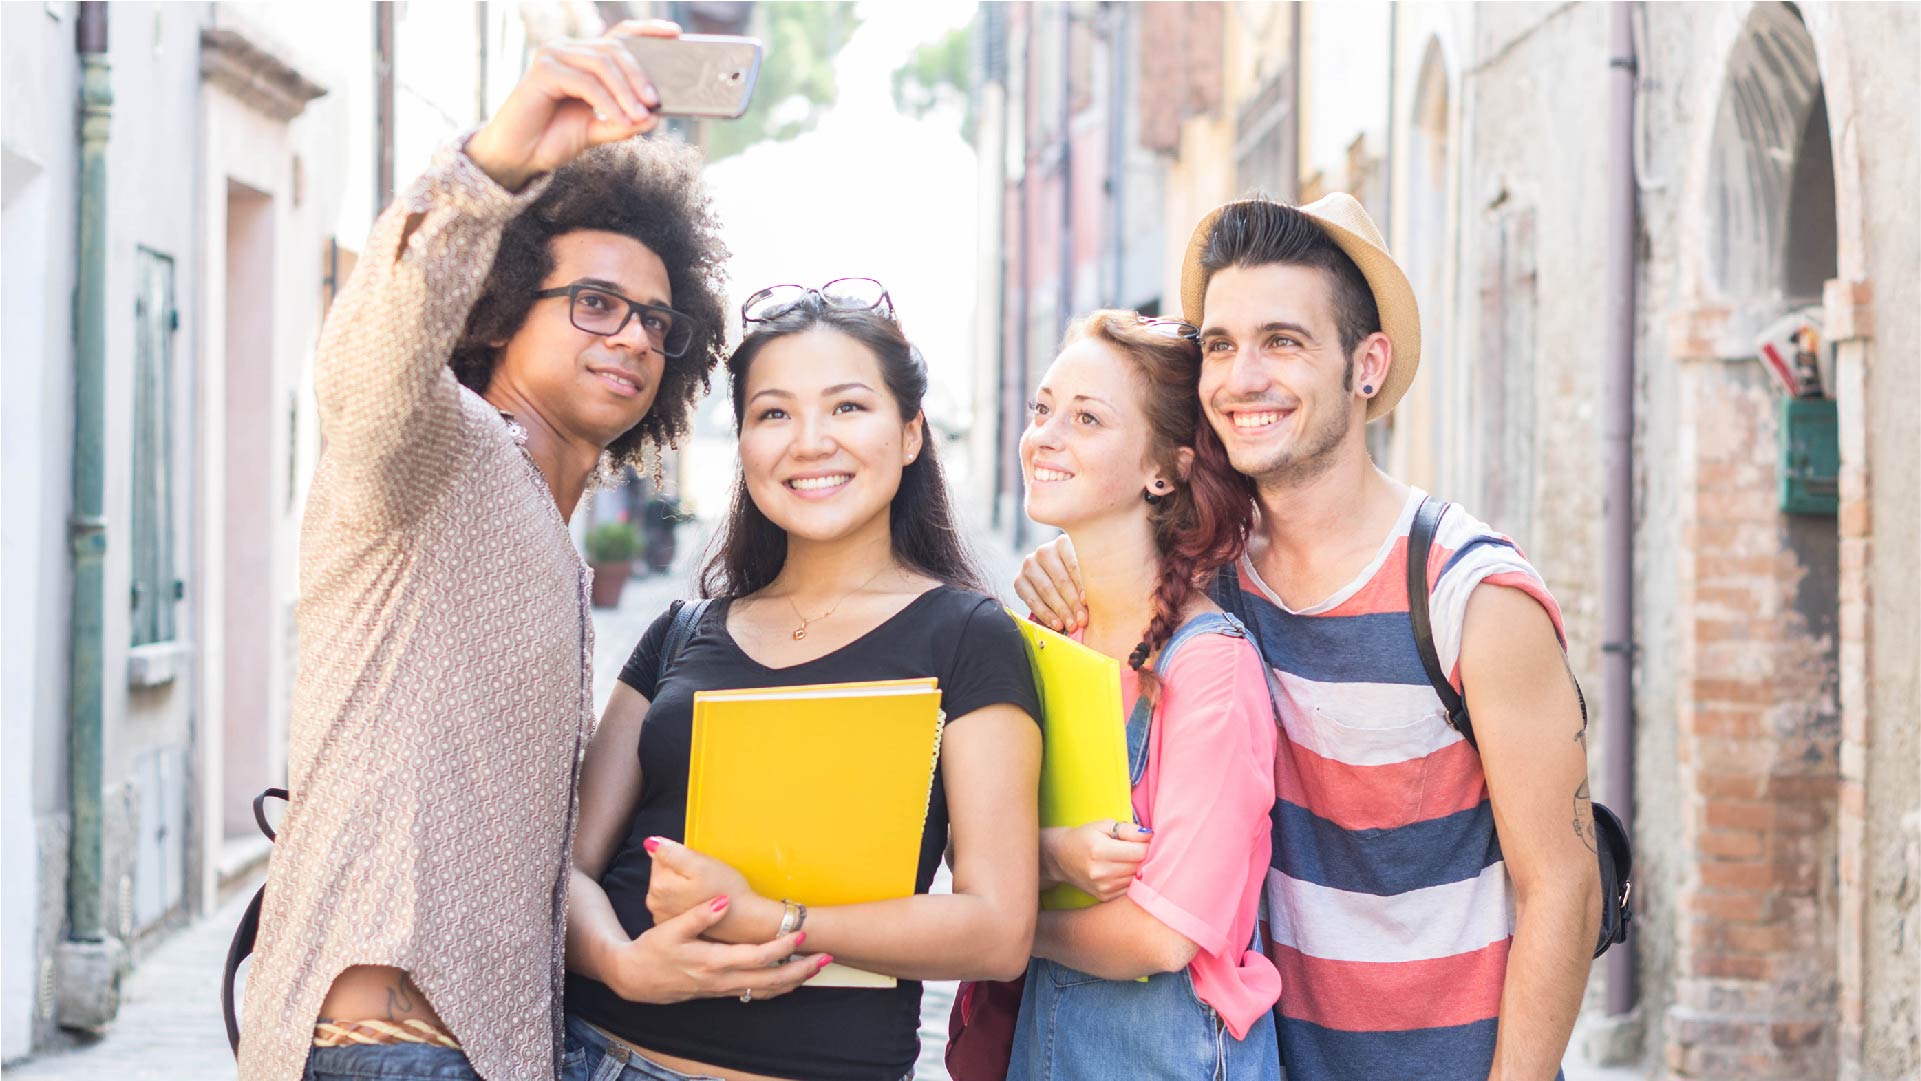 Vier jongeren met hun schriften nemen een selfie in een straat in het buitenland